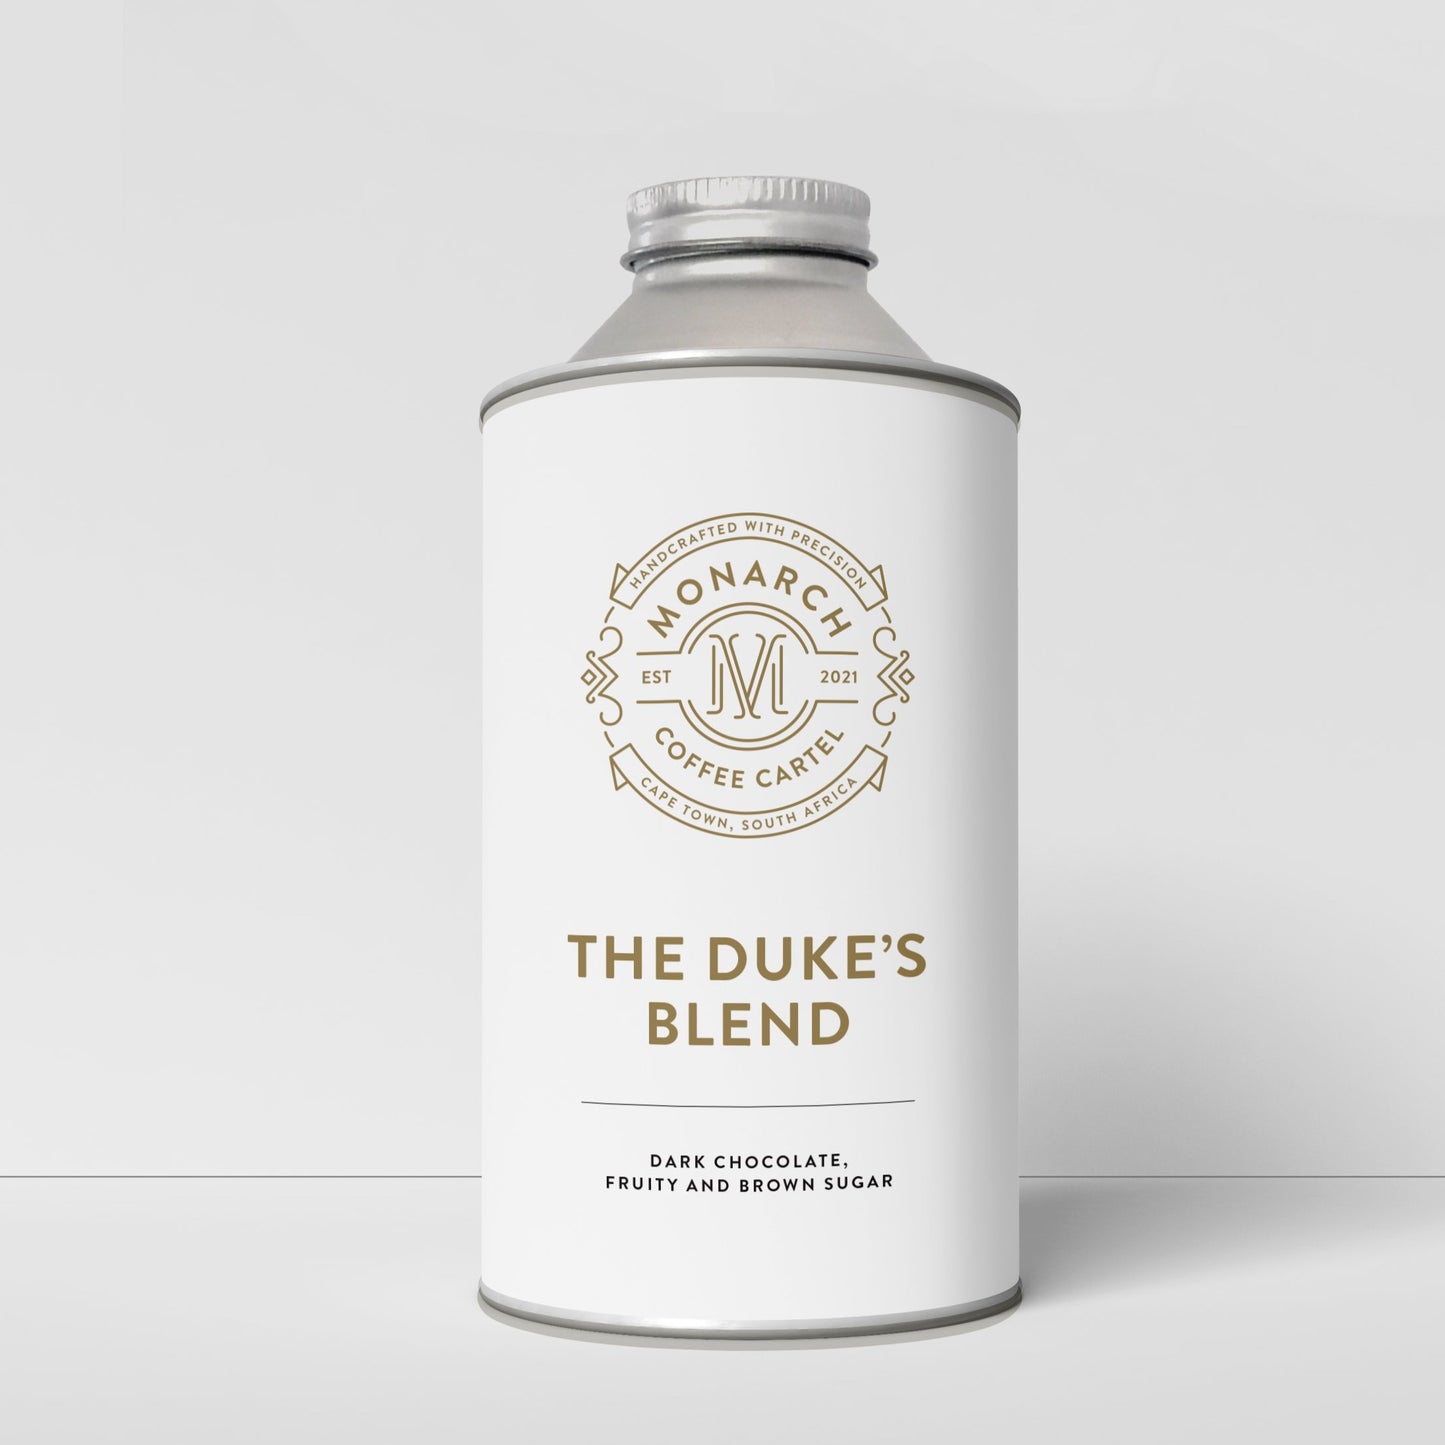 The Duke's Blend